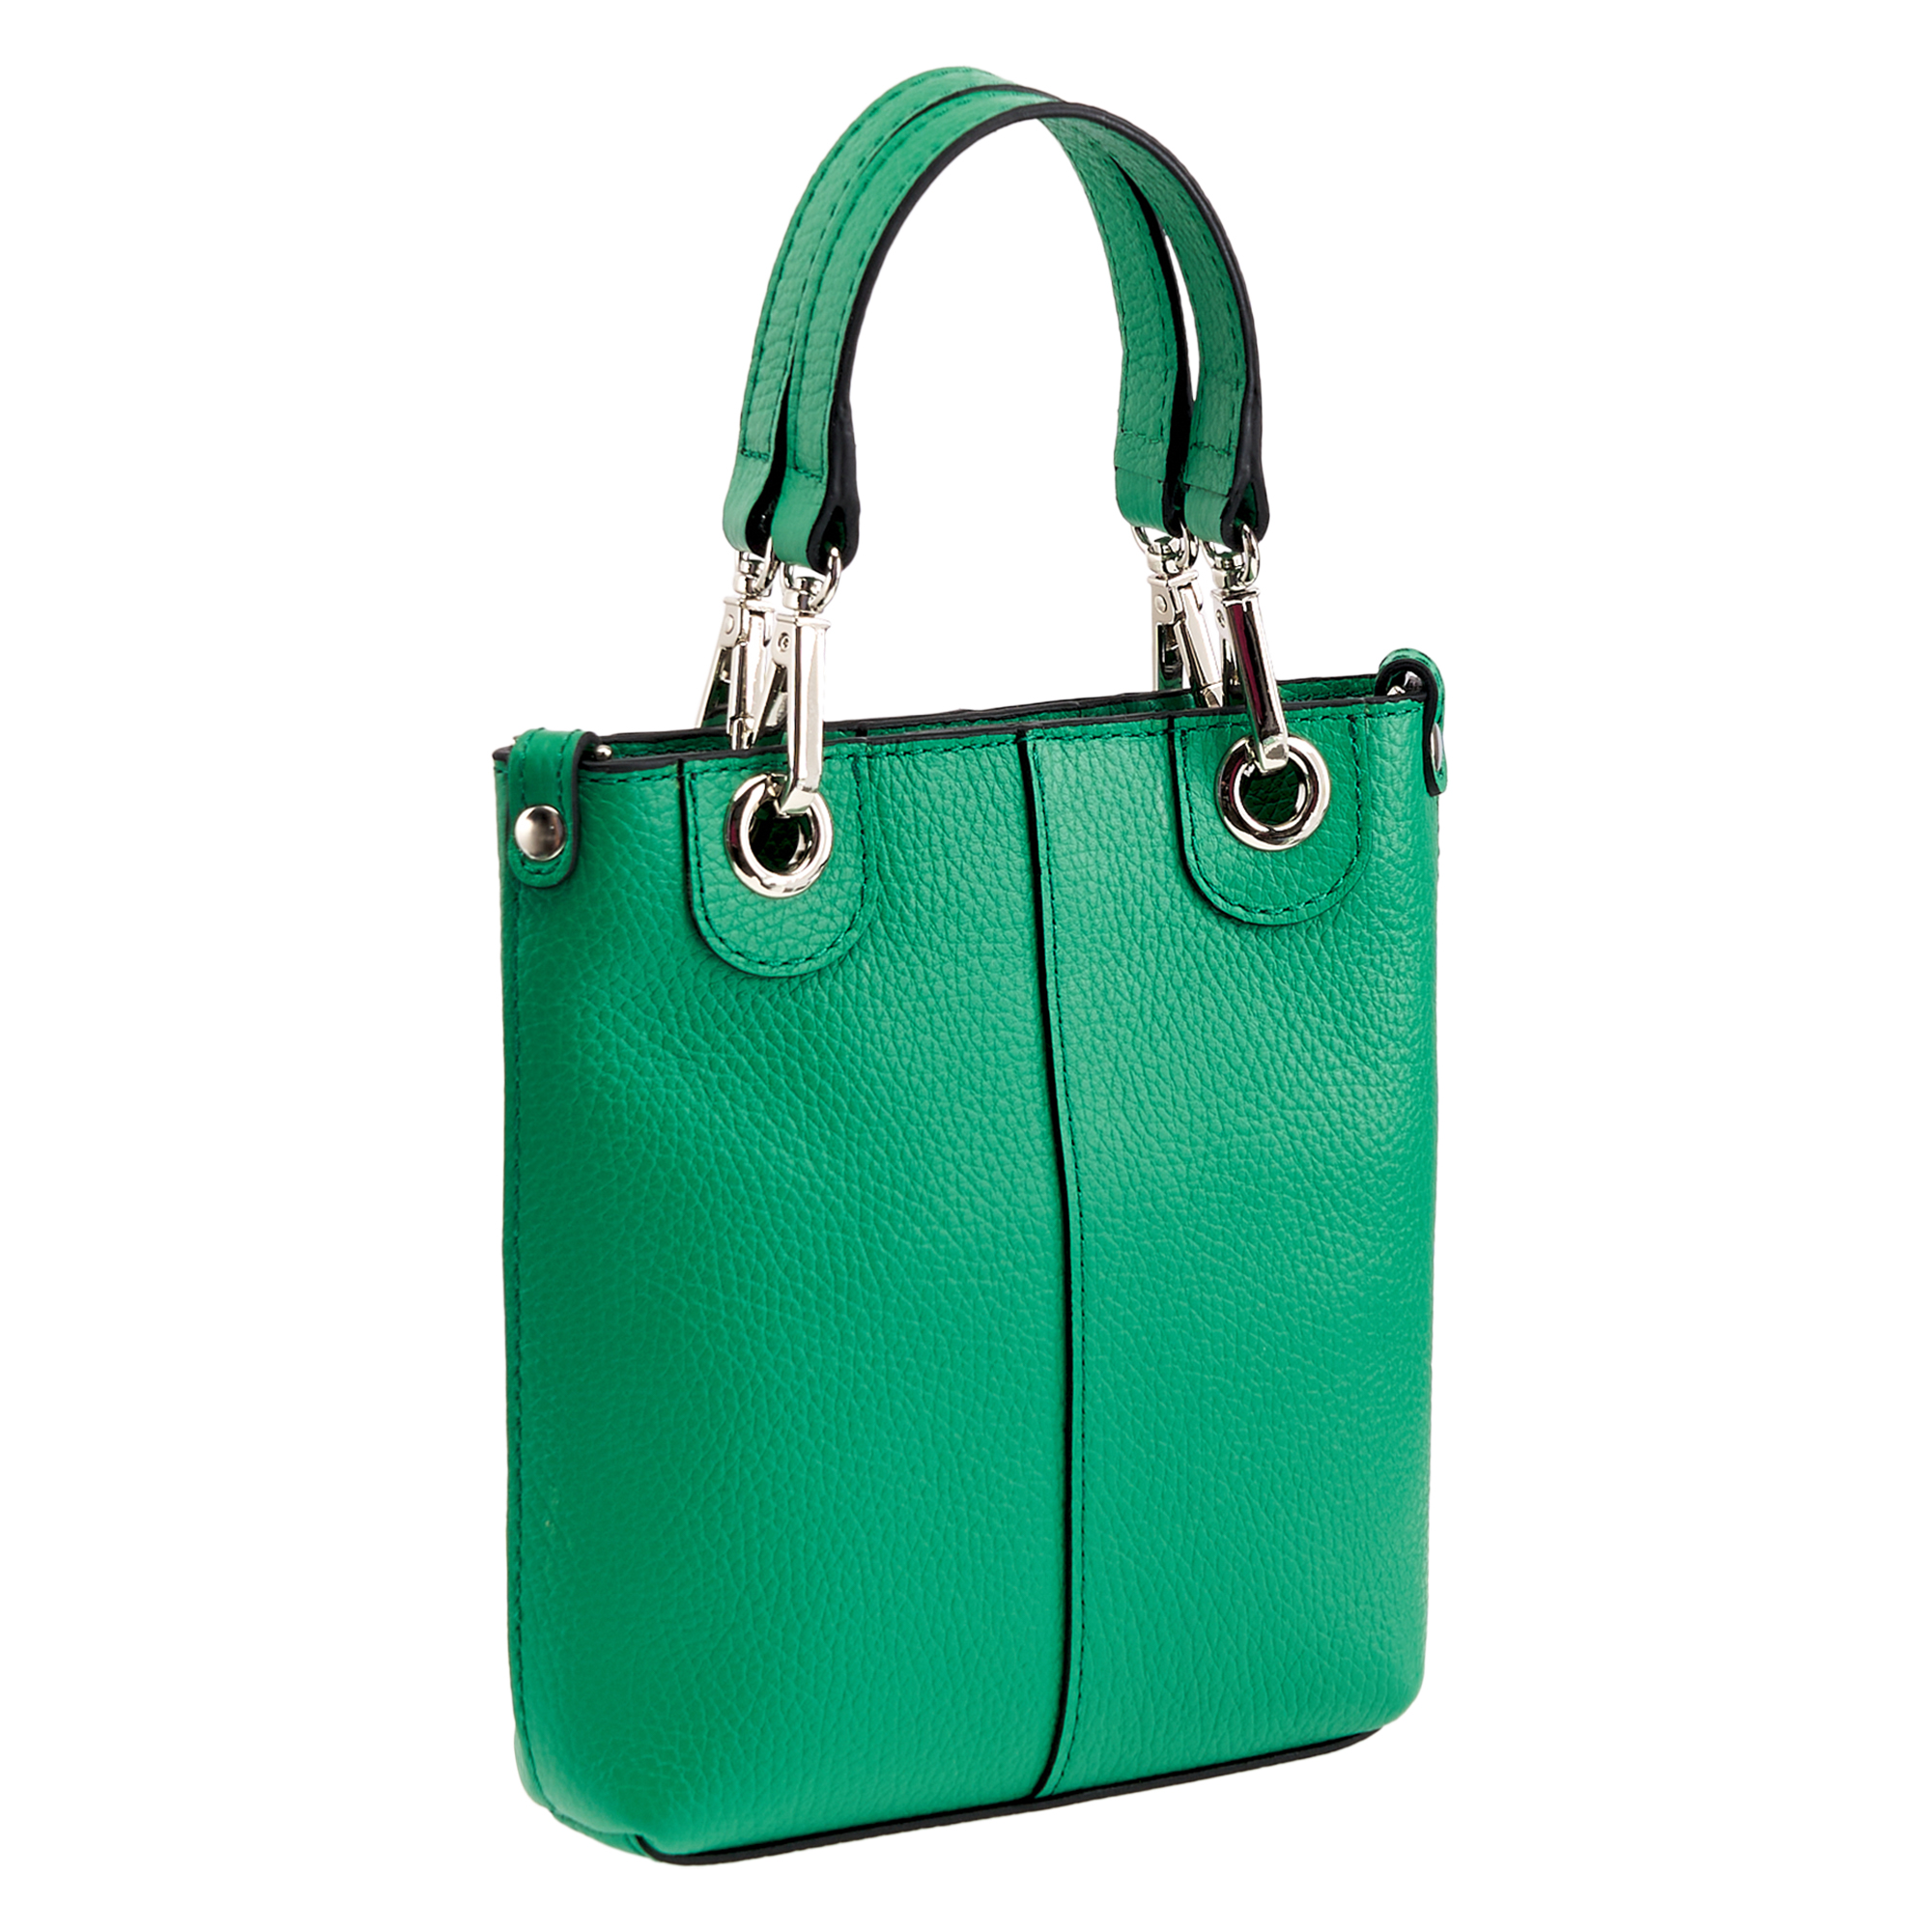 Др.Коффер 50733S-65 сумка женская, цвет зеленый